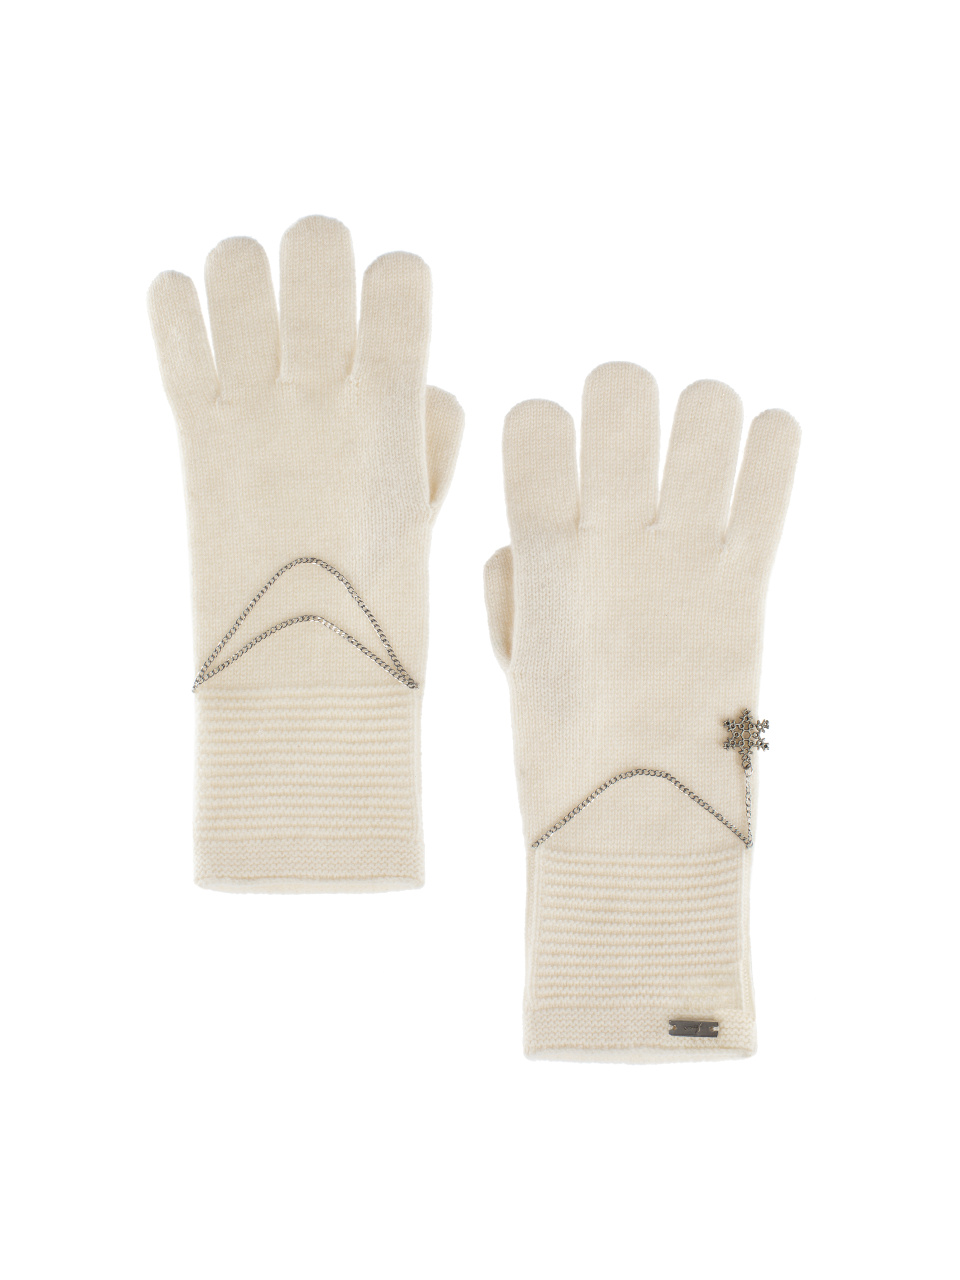 Кашемировые перчатки молочного цвета с серебряной снежинкой, 1